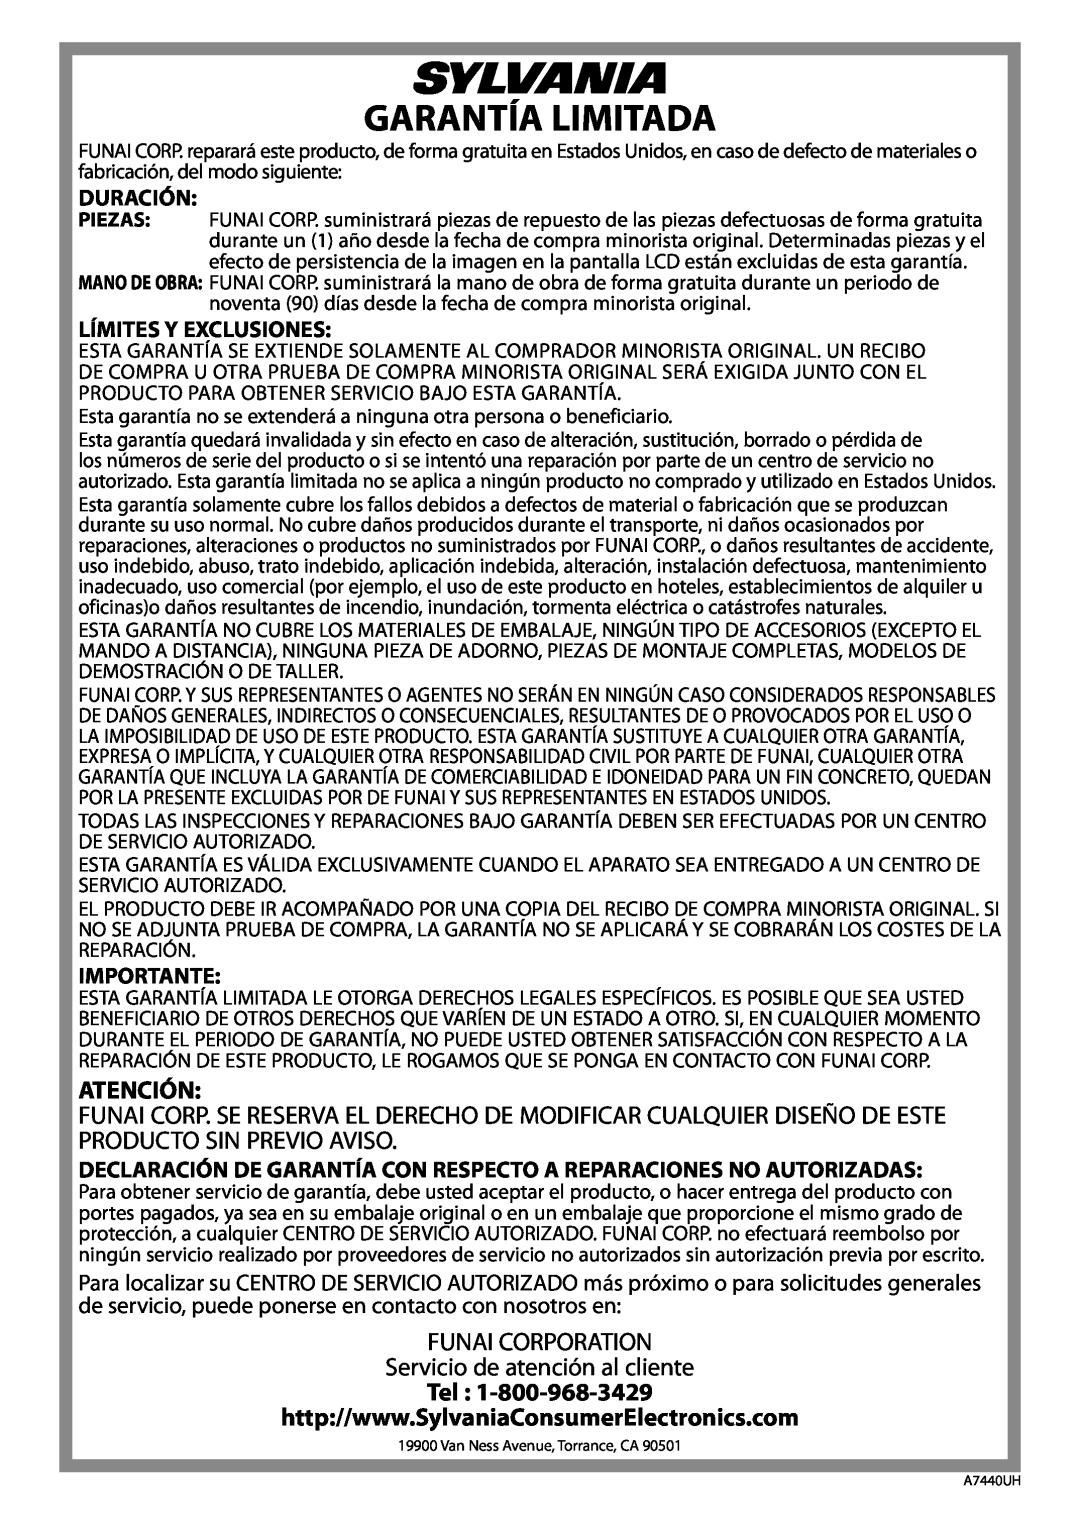 Sylvania LD200SL8 Garantía Limitada, Atención, FUNAI CORPORATION Servicio de atención al cliente, Duración, Importante 